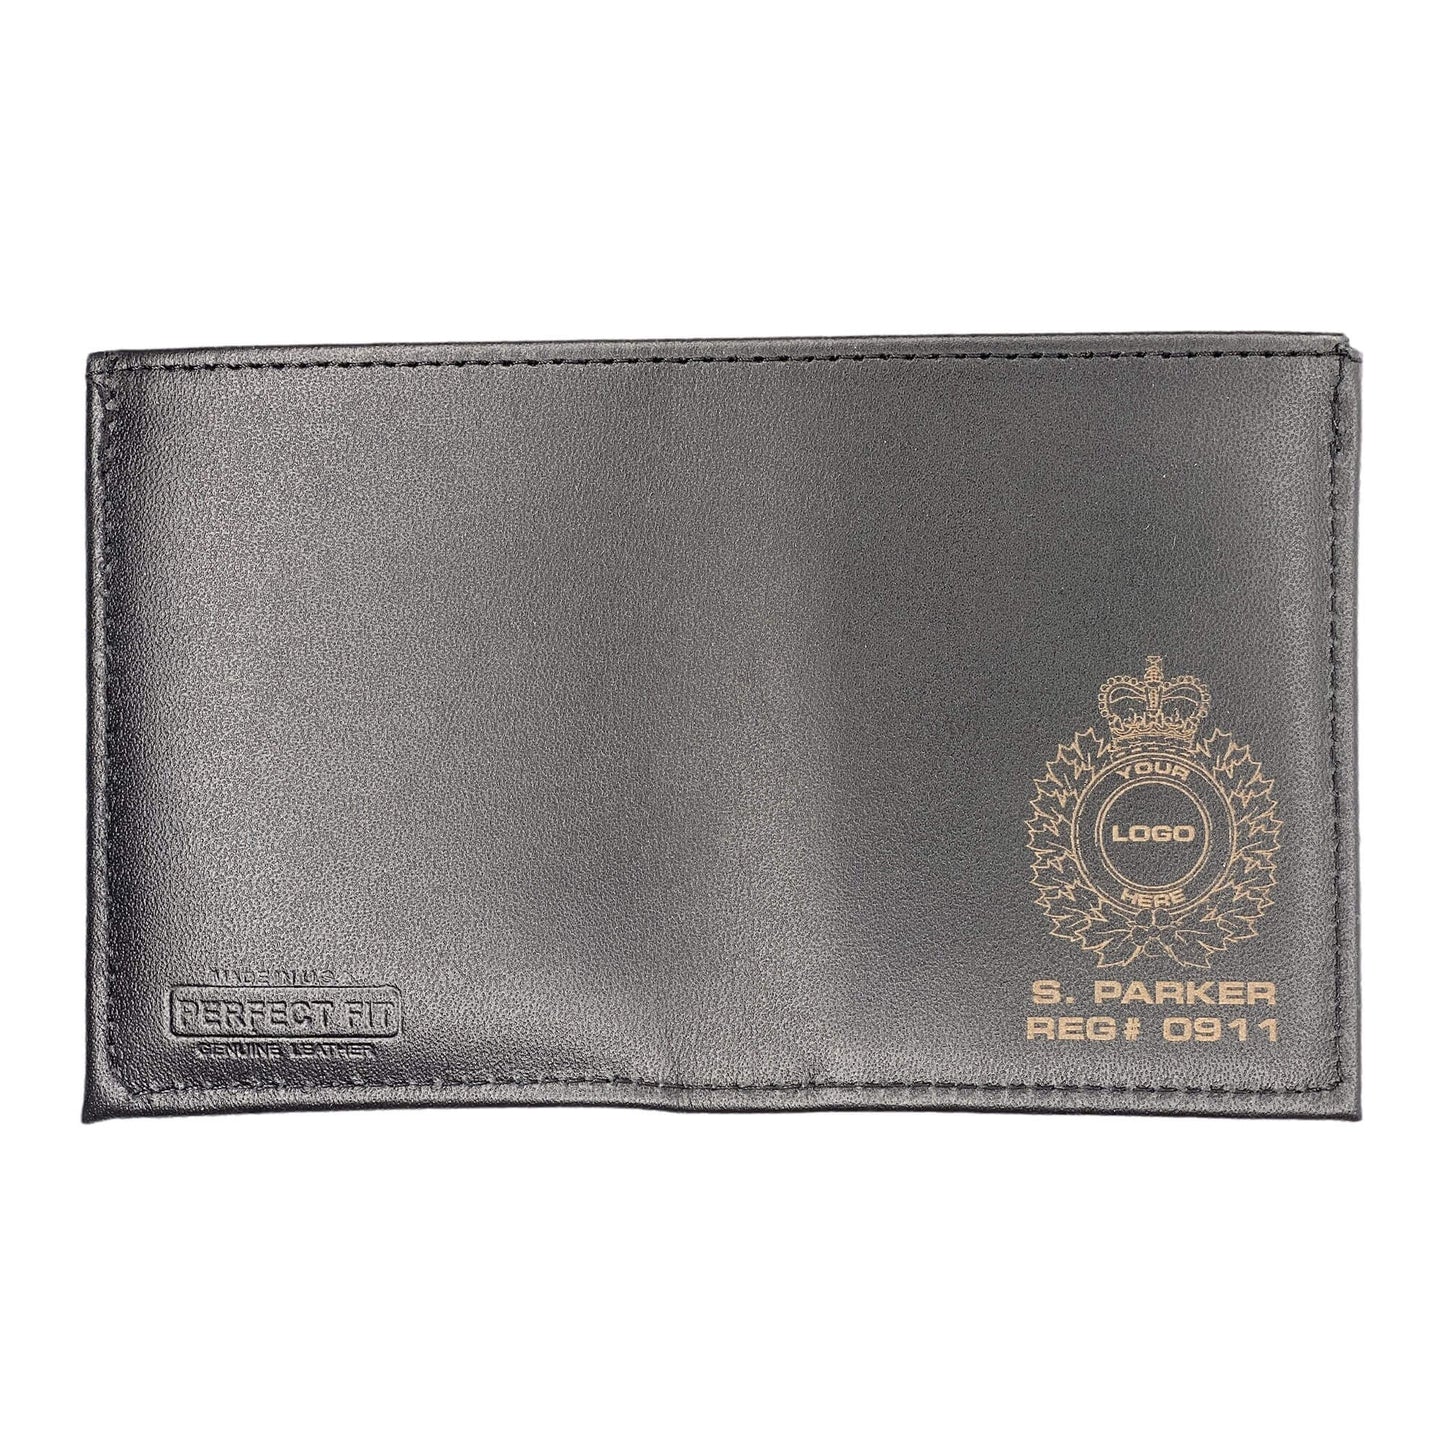 Quebec Revenue Agency Badge Wallet